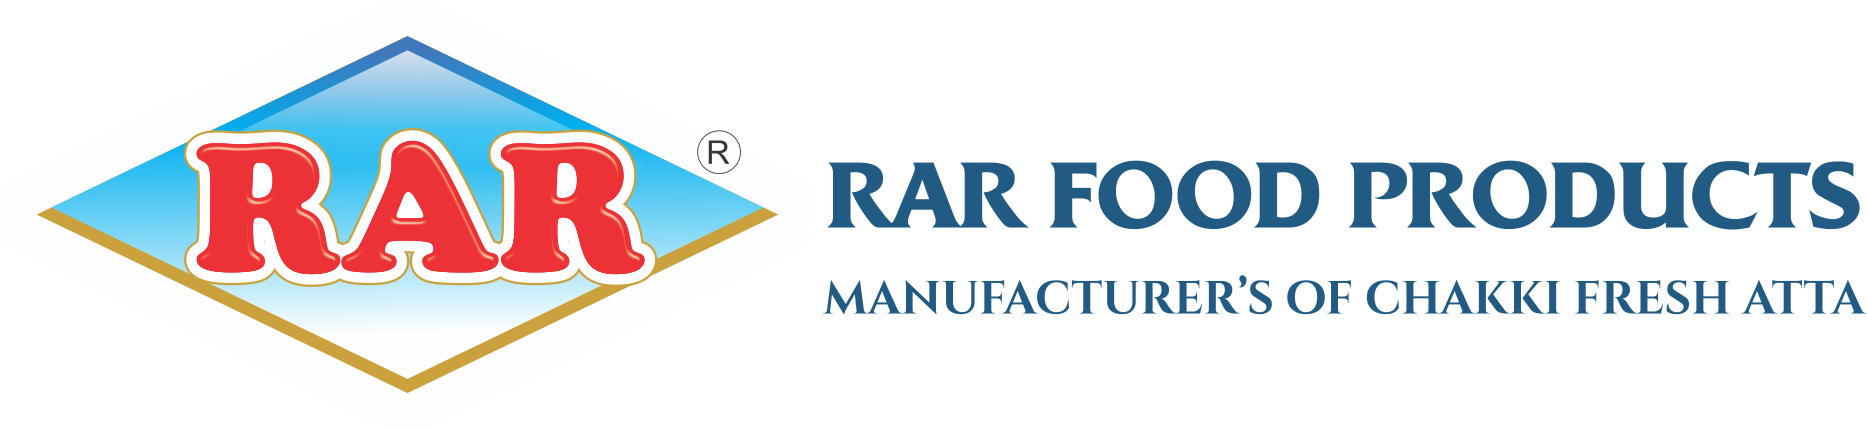 rarfoodproducts.com RAR Food Products Hyderabad